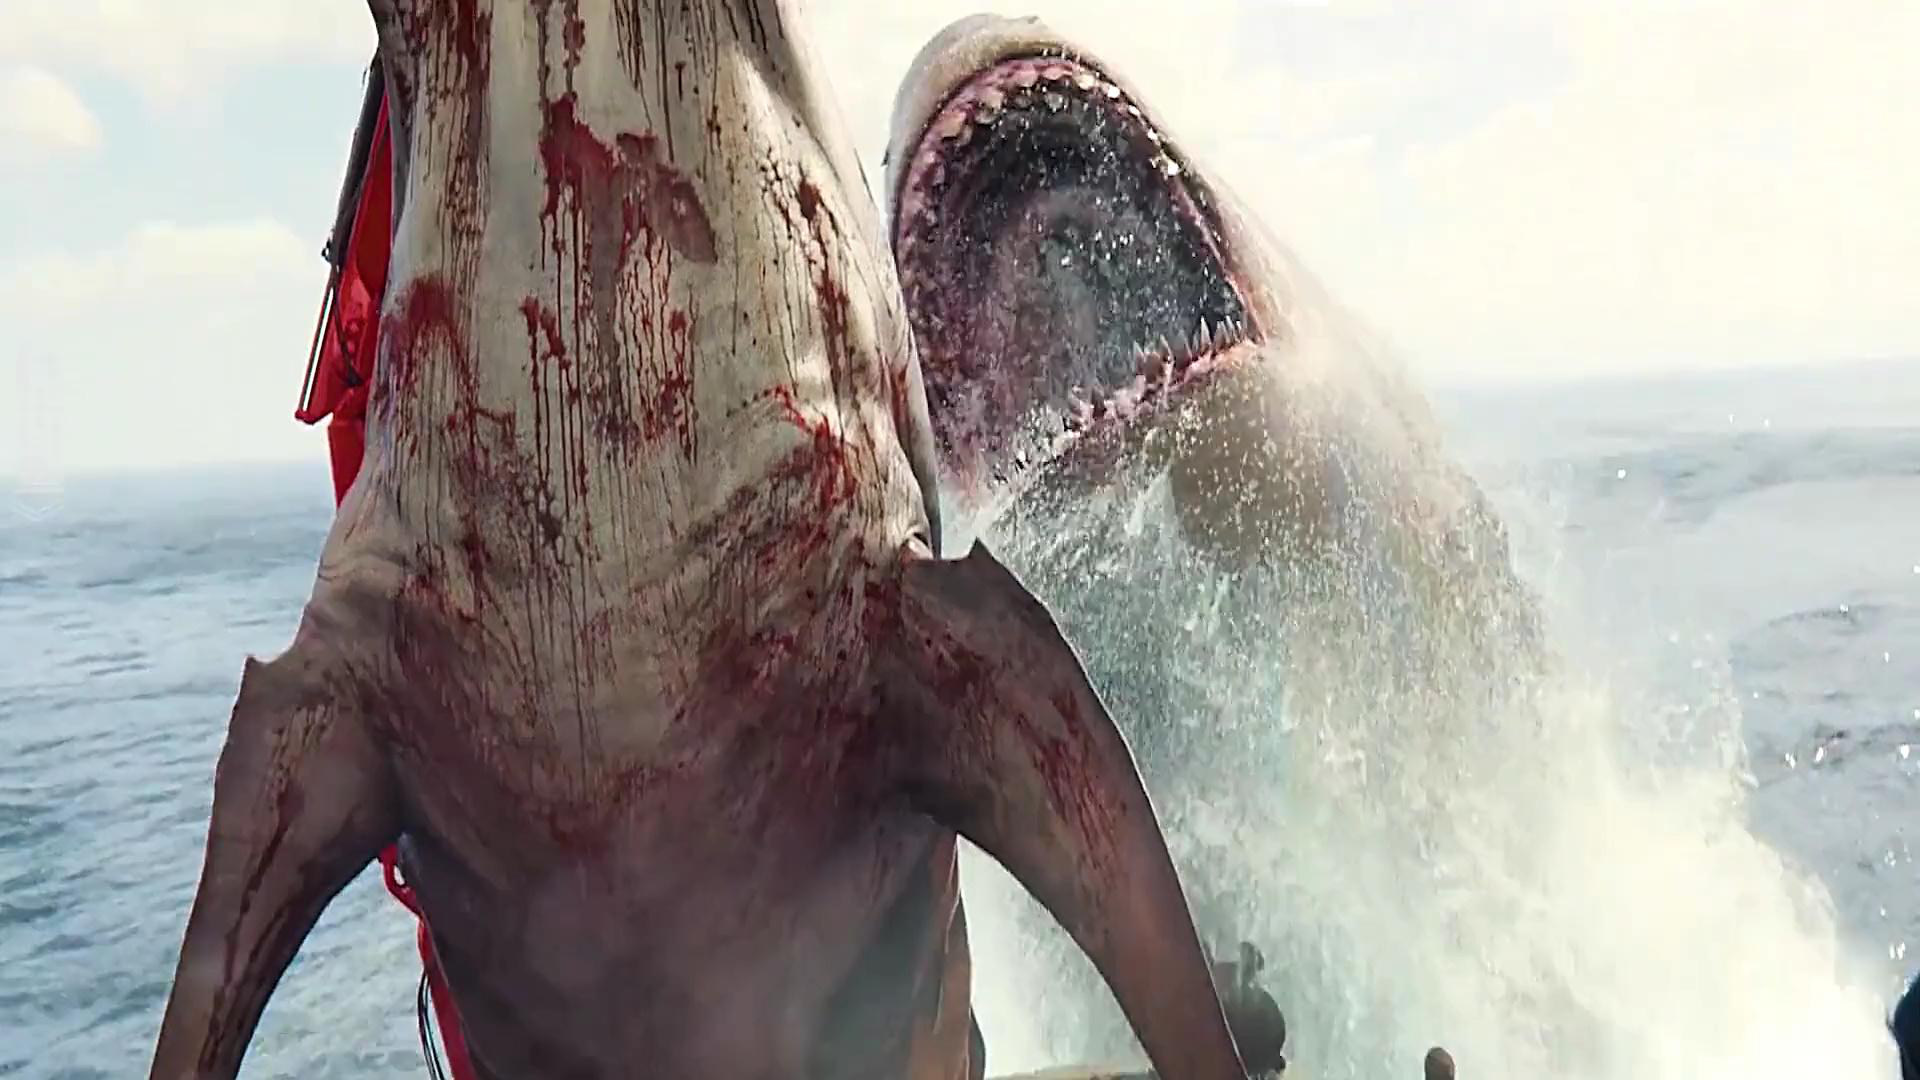 盘点电影中的变异鲨鱼,五头鲨竟然比巨齿鲨还厉害